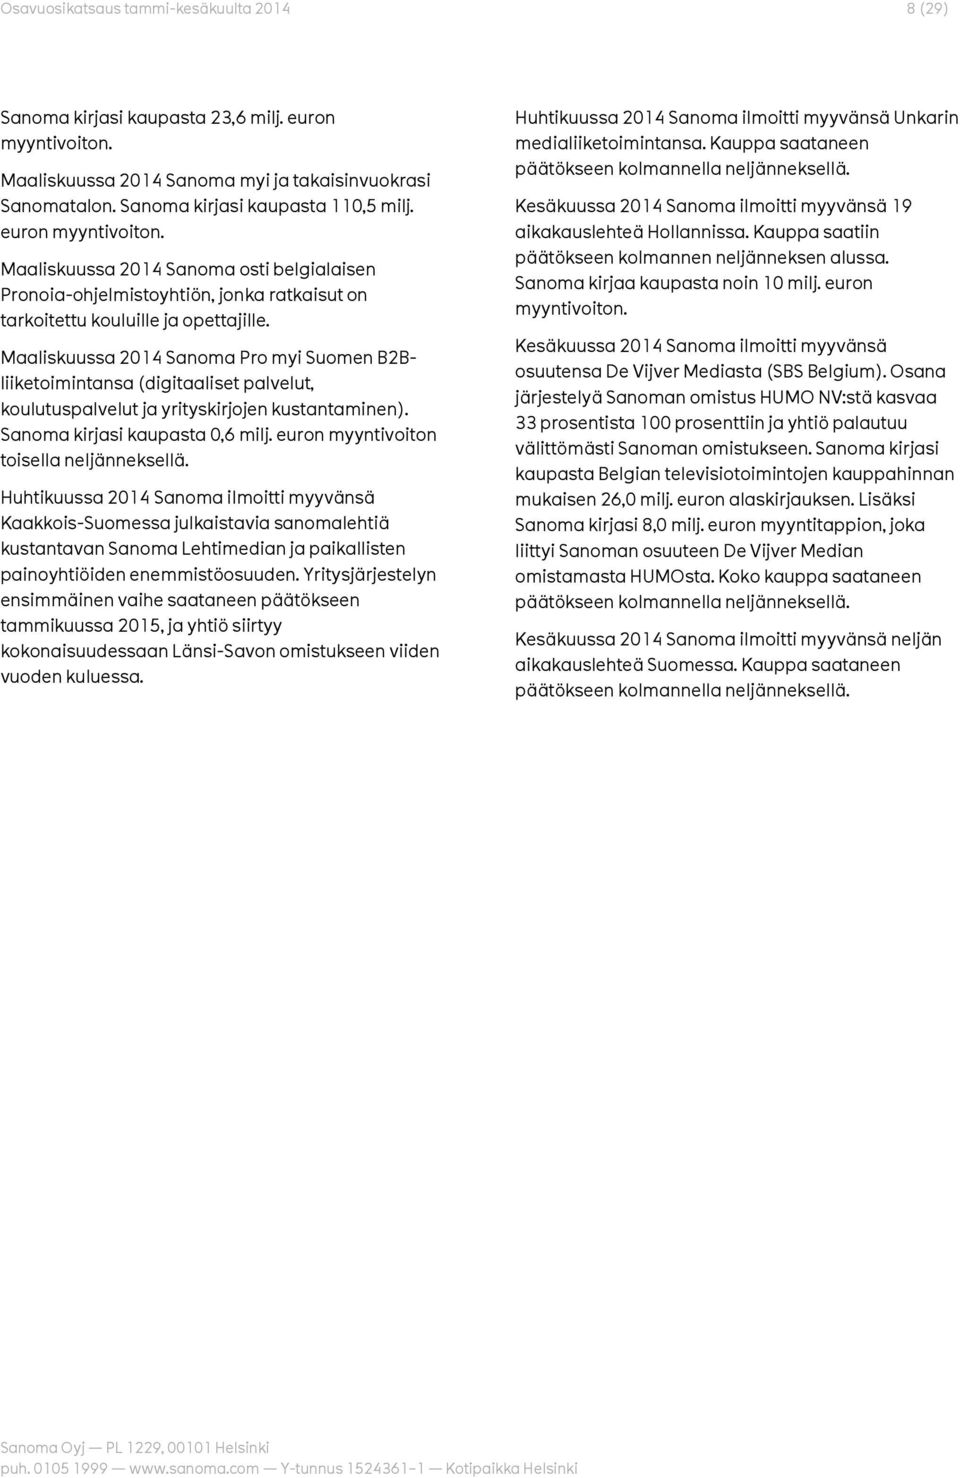 Maaliskuussa 2014 Sanoma Pro myi Suomen B2Bliiketoimintansa (digitaaliset palvelut, koulutuspalvelut ja yrityskirjojen kustantaminen). Sanoma kirjasi kaupasta 0,6 milj.